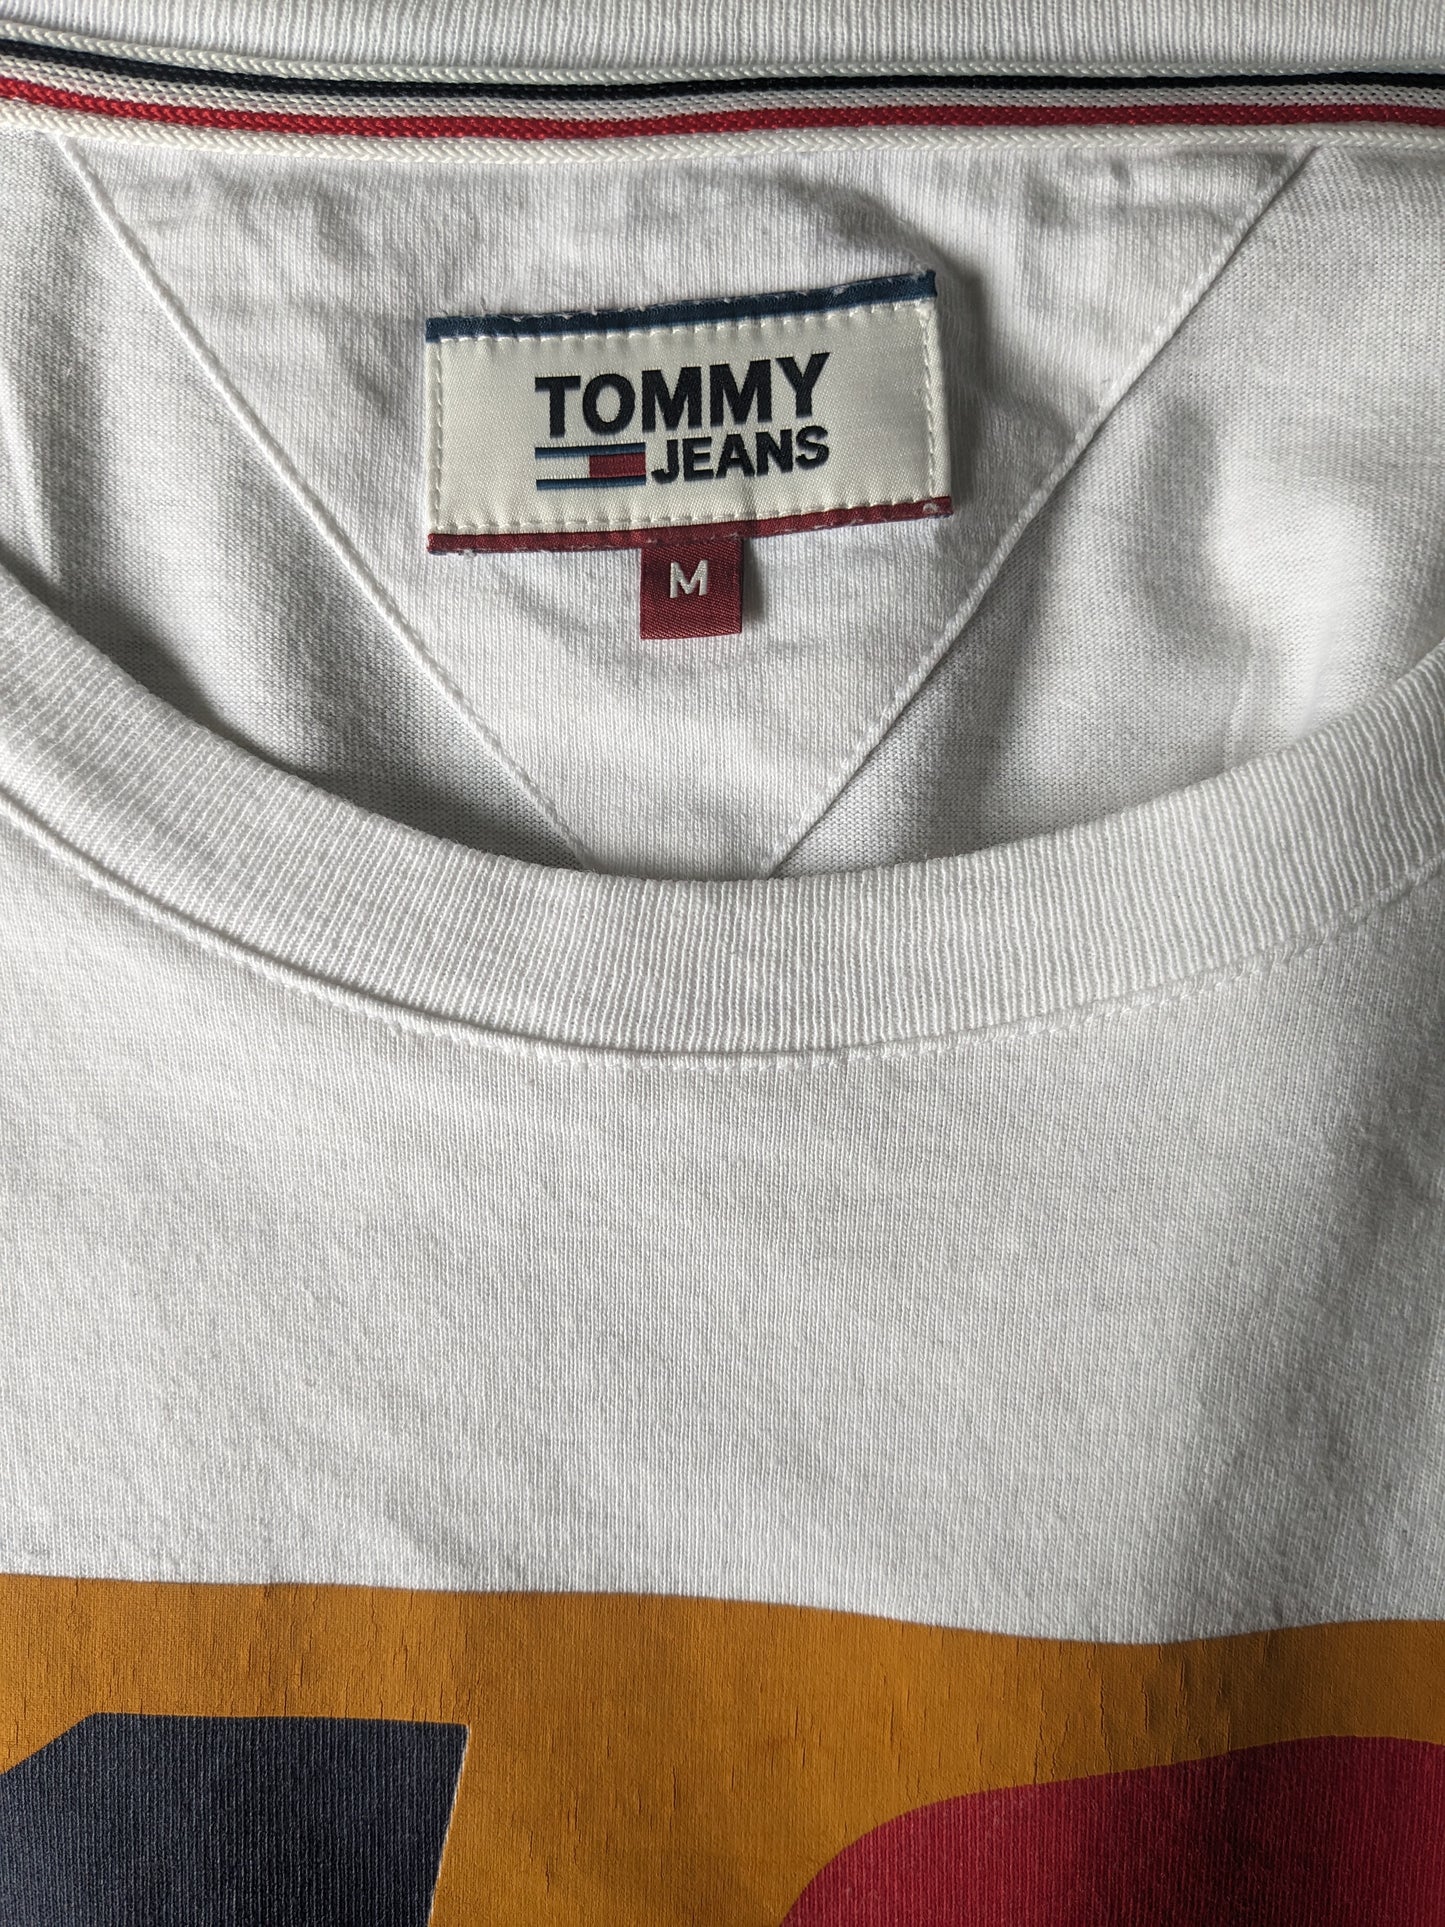 Tommy jeans longsleeve. Wit met opdruk. Maat M.